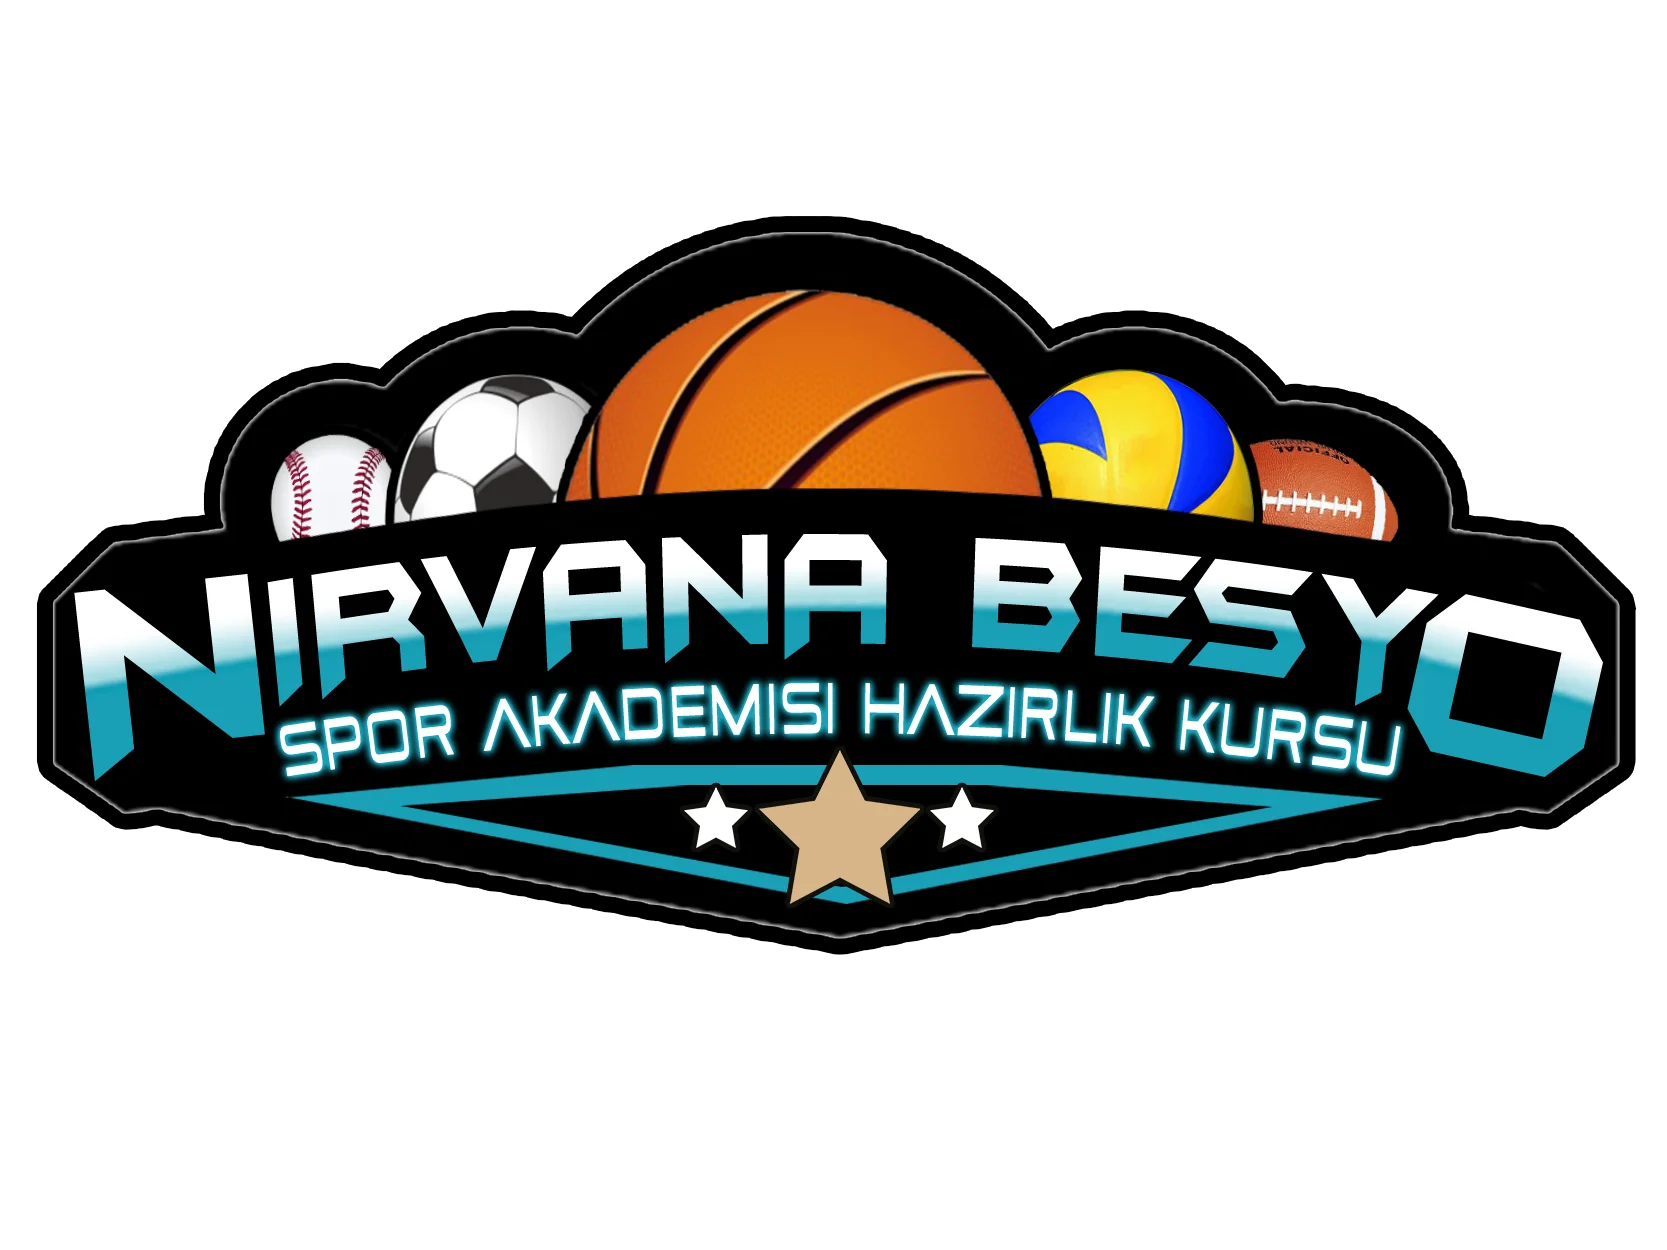 Ankara Besyo Hazırlık Kursları | NİRVANA Spor Akademisi